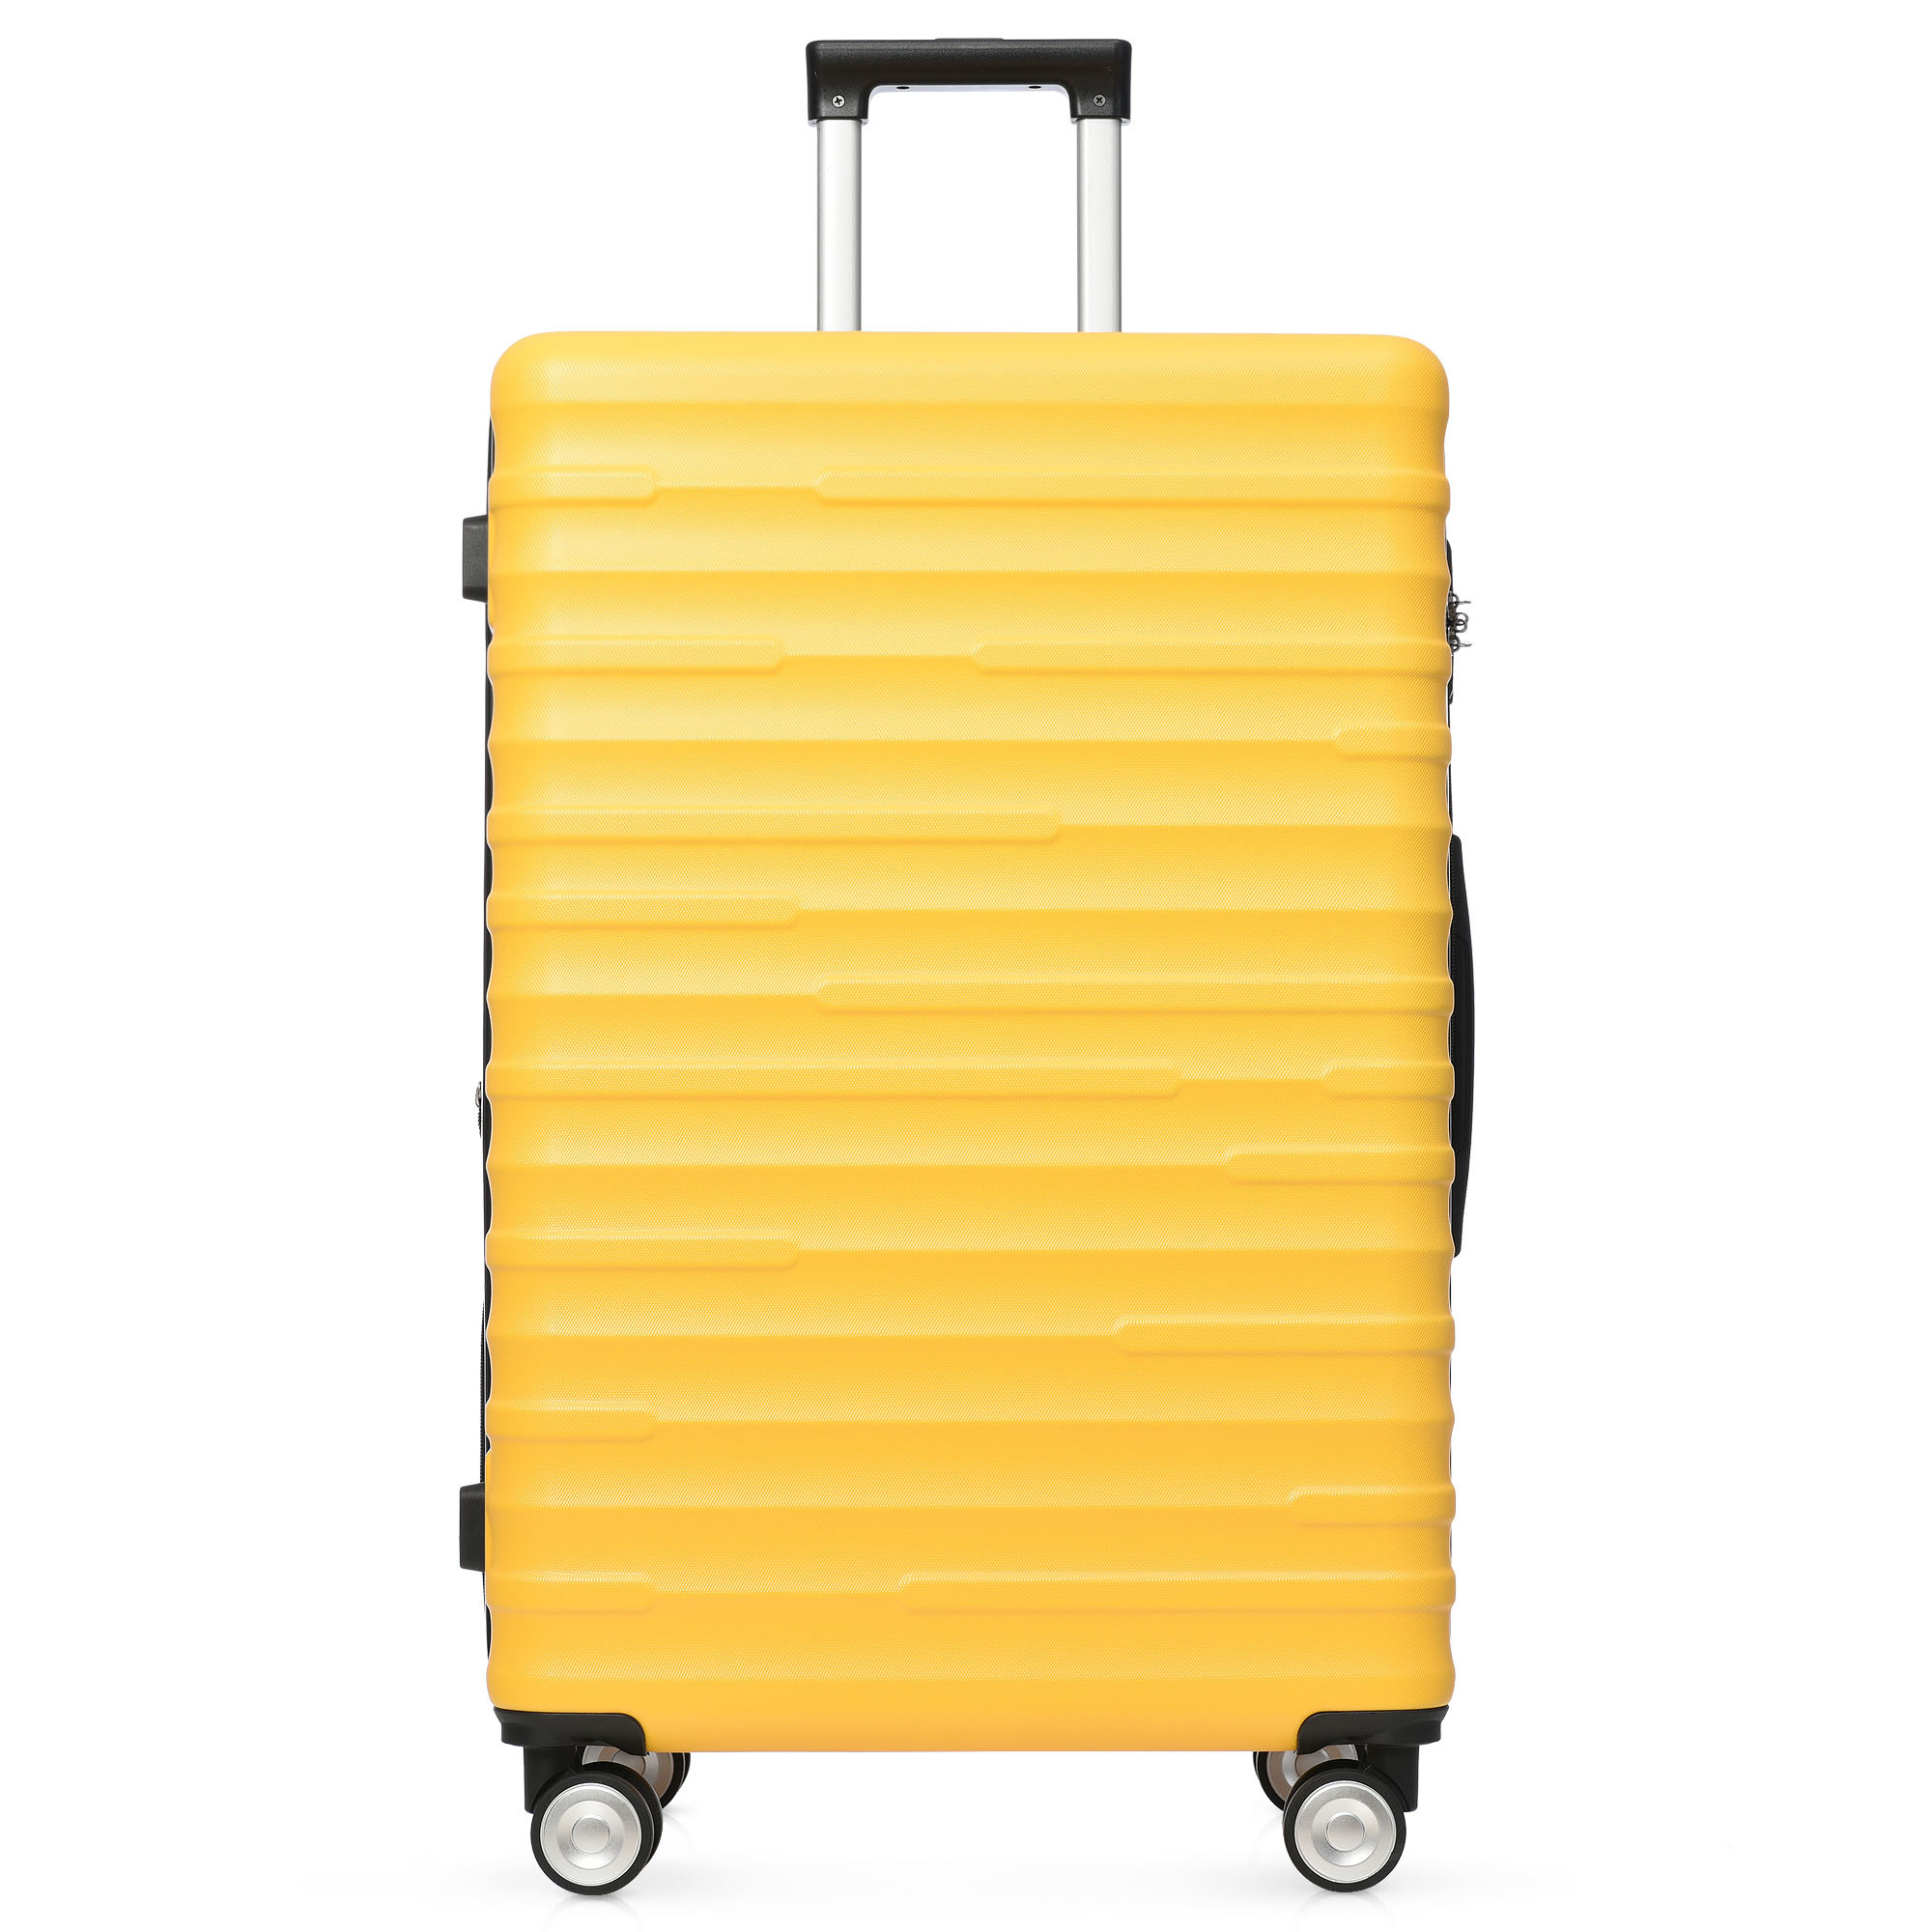 MERAX ABS-Gepäck, 035Y TSA-Schloss, 4 Räder Hochwertiges Koffer